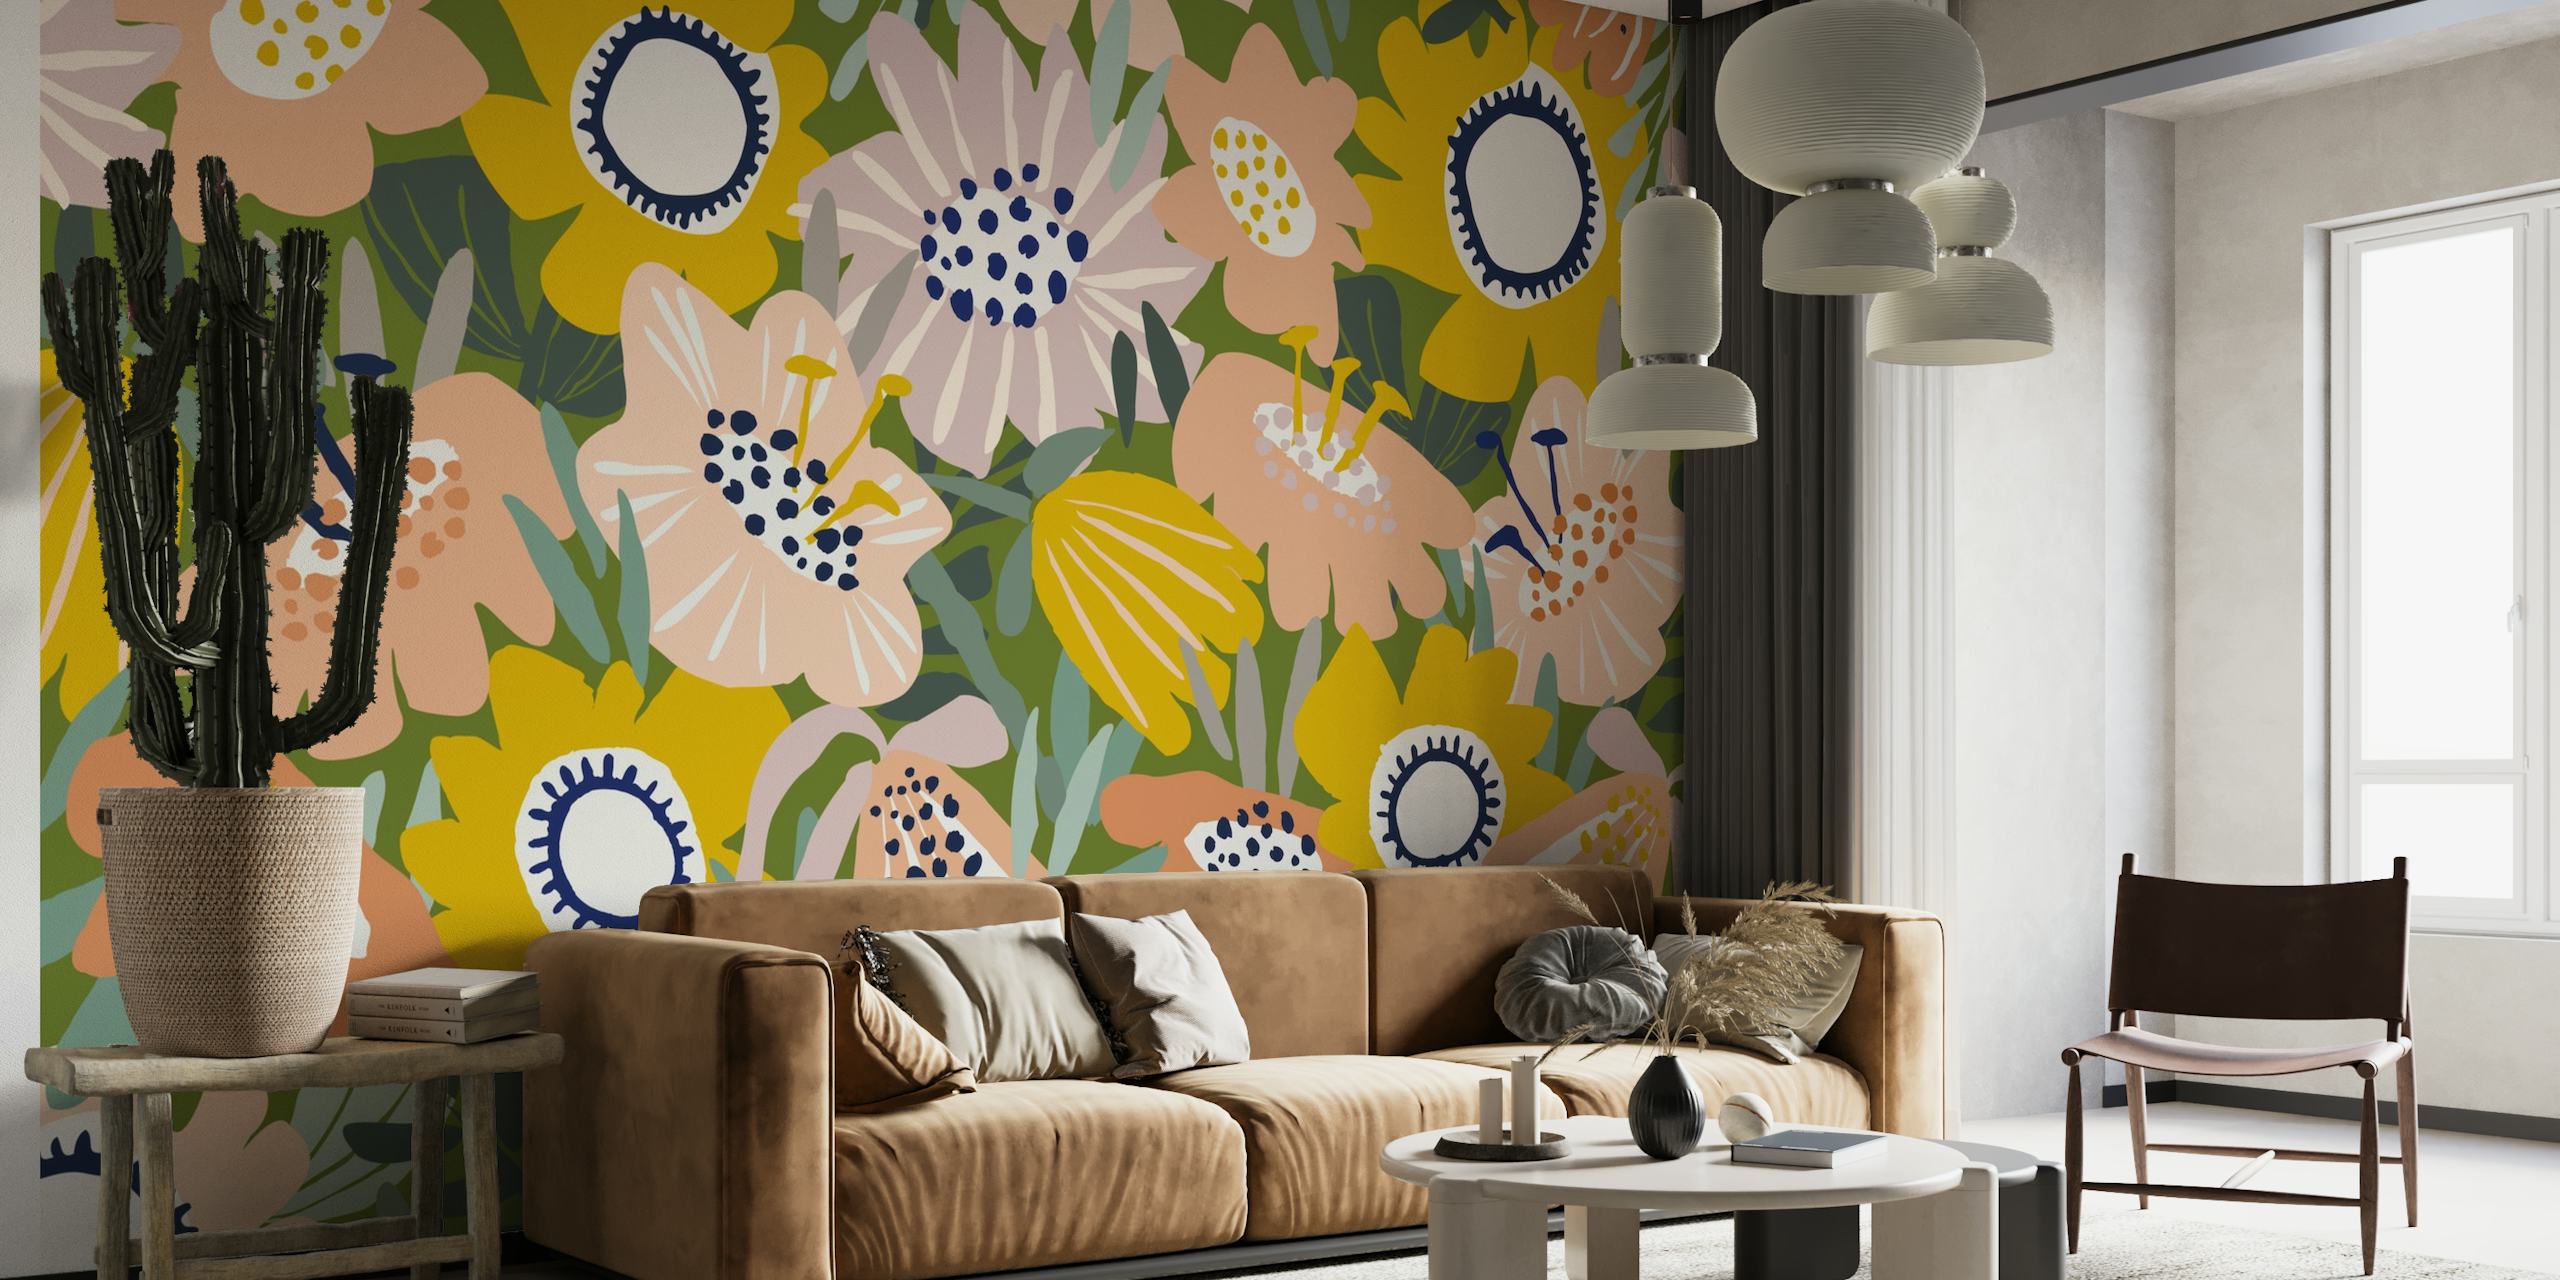 Värikäs seinämaalaus trooppisilla kukilla ja käsin piirretyllä tyylillä